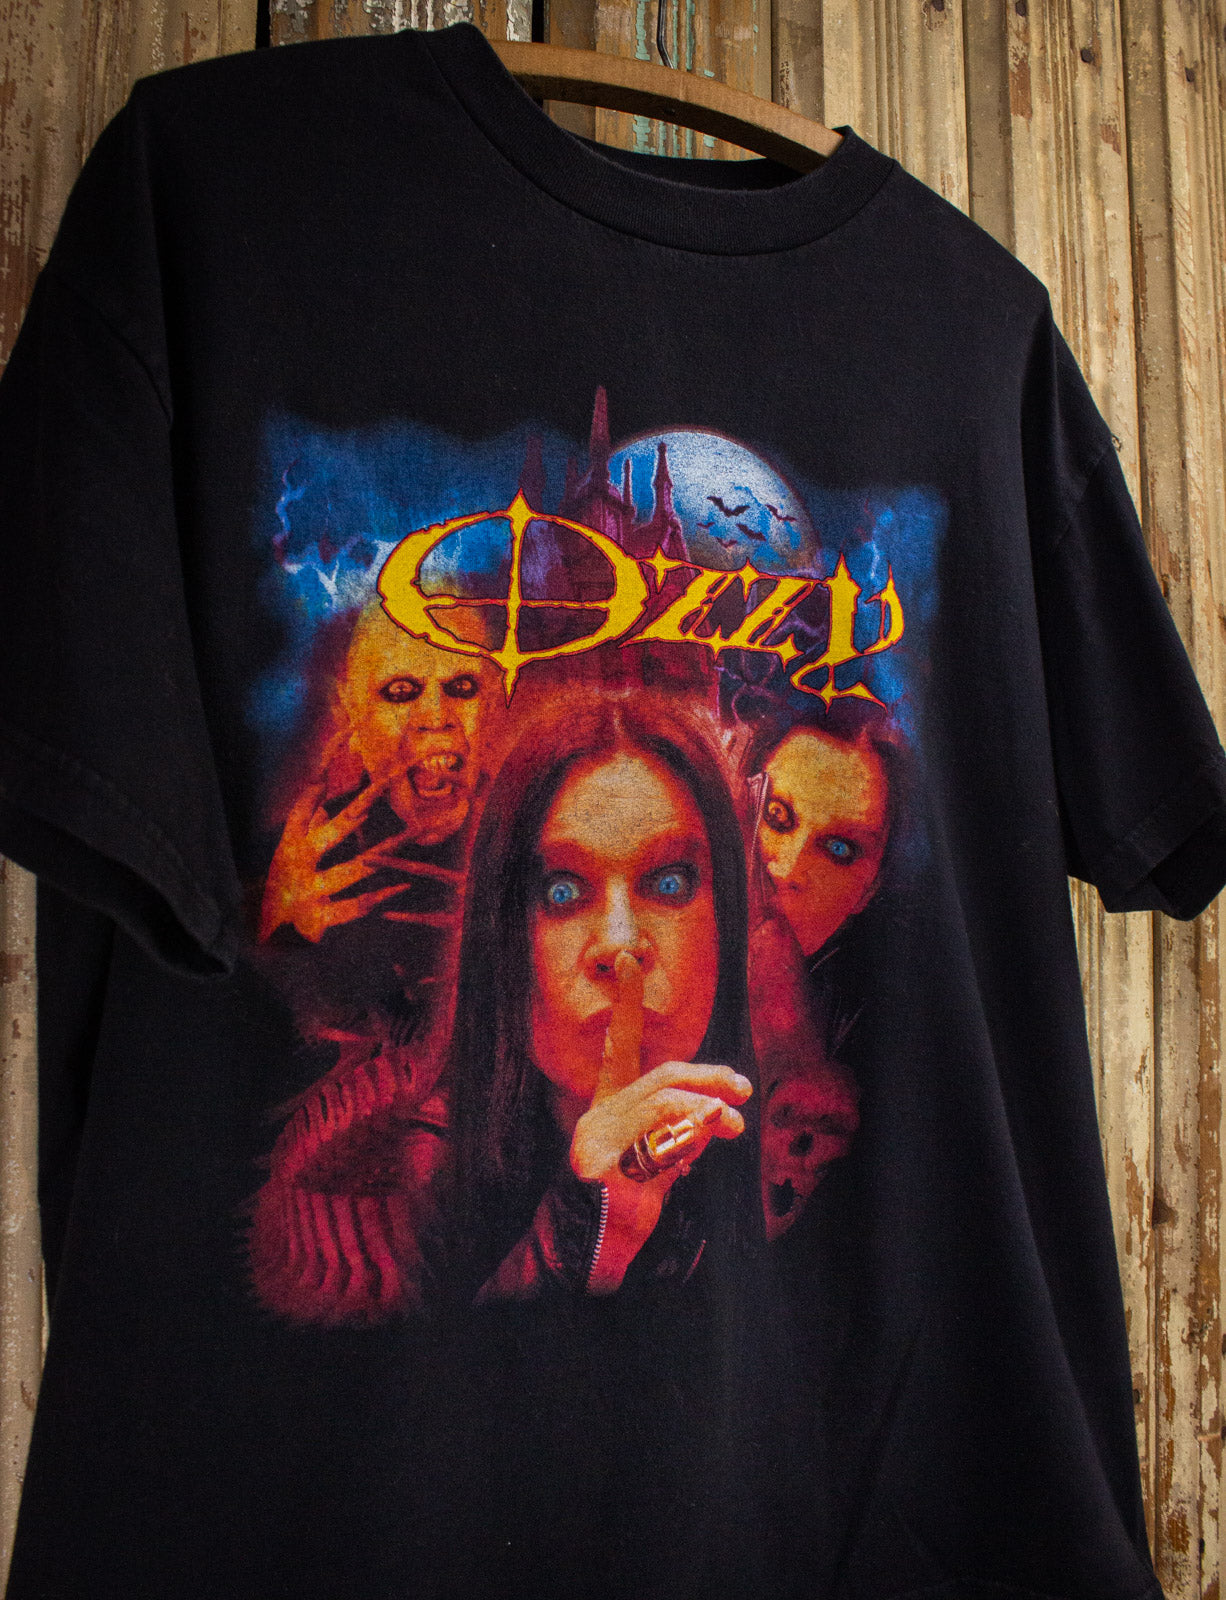 Vintage Ozzy Osbourne Tour Concert T Shirt 2003 Black Large